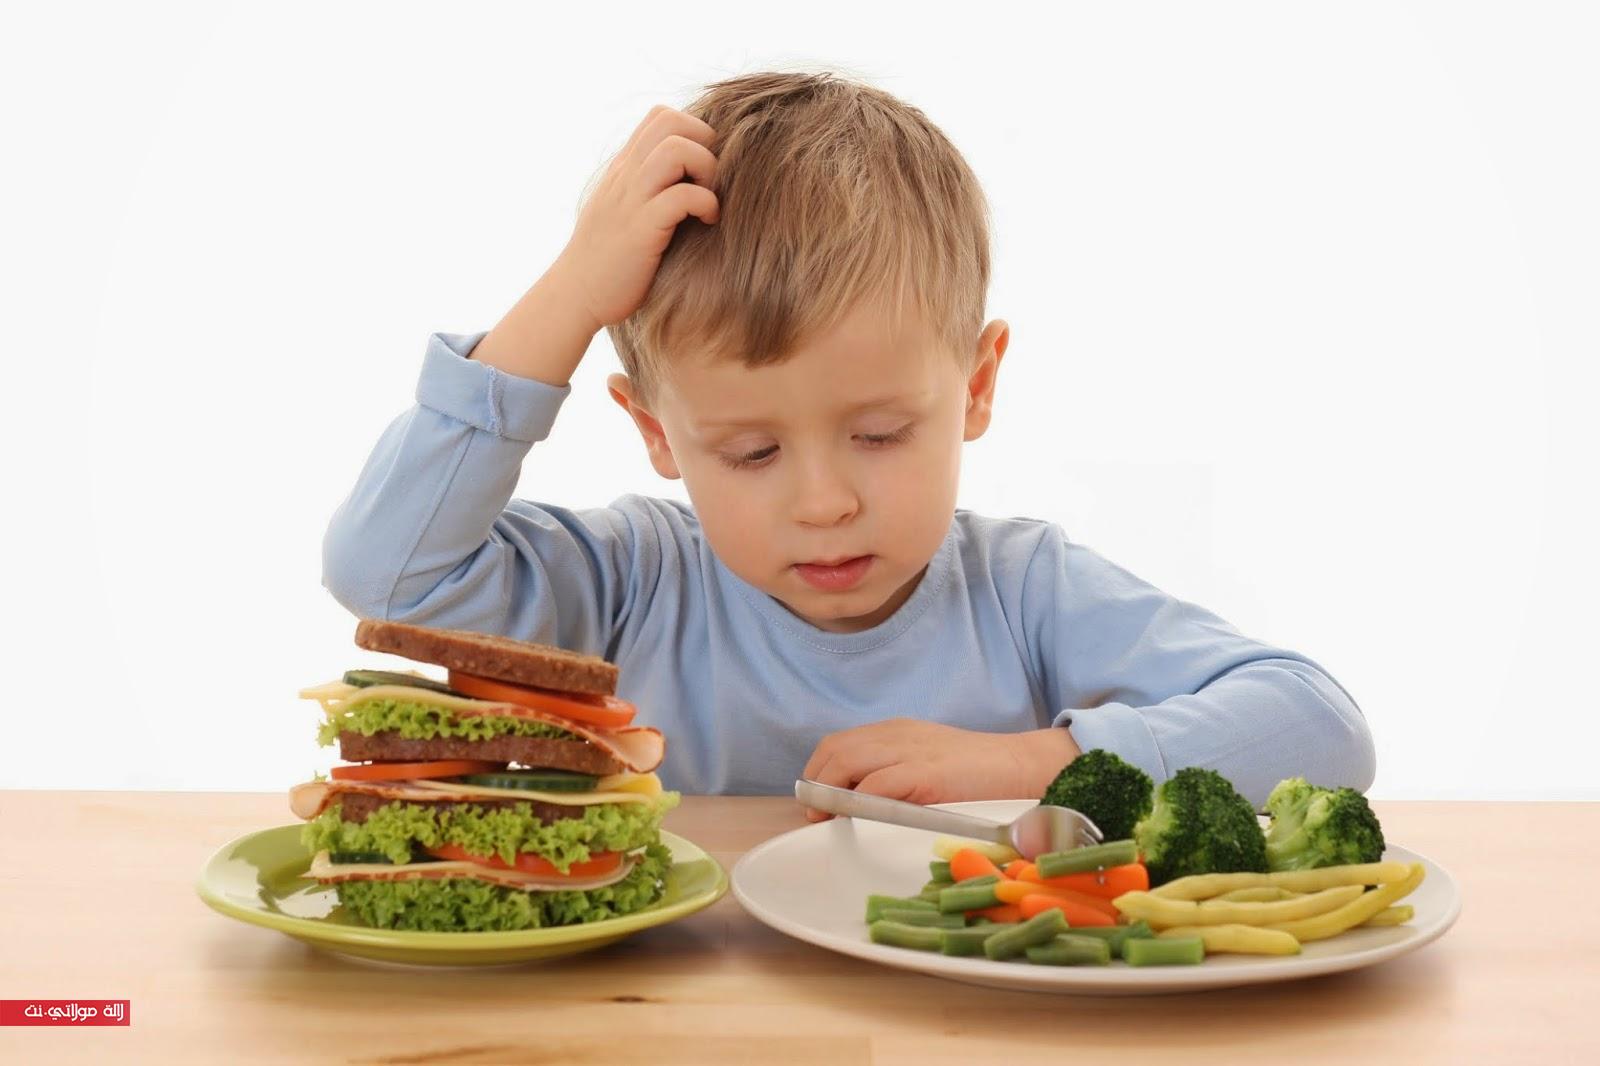 اتبعي هذه النصائح لتغذية متوازنة عند طفلك